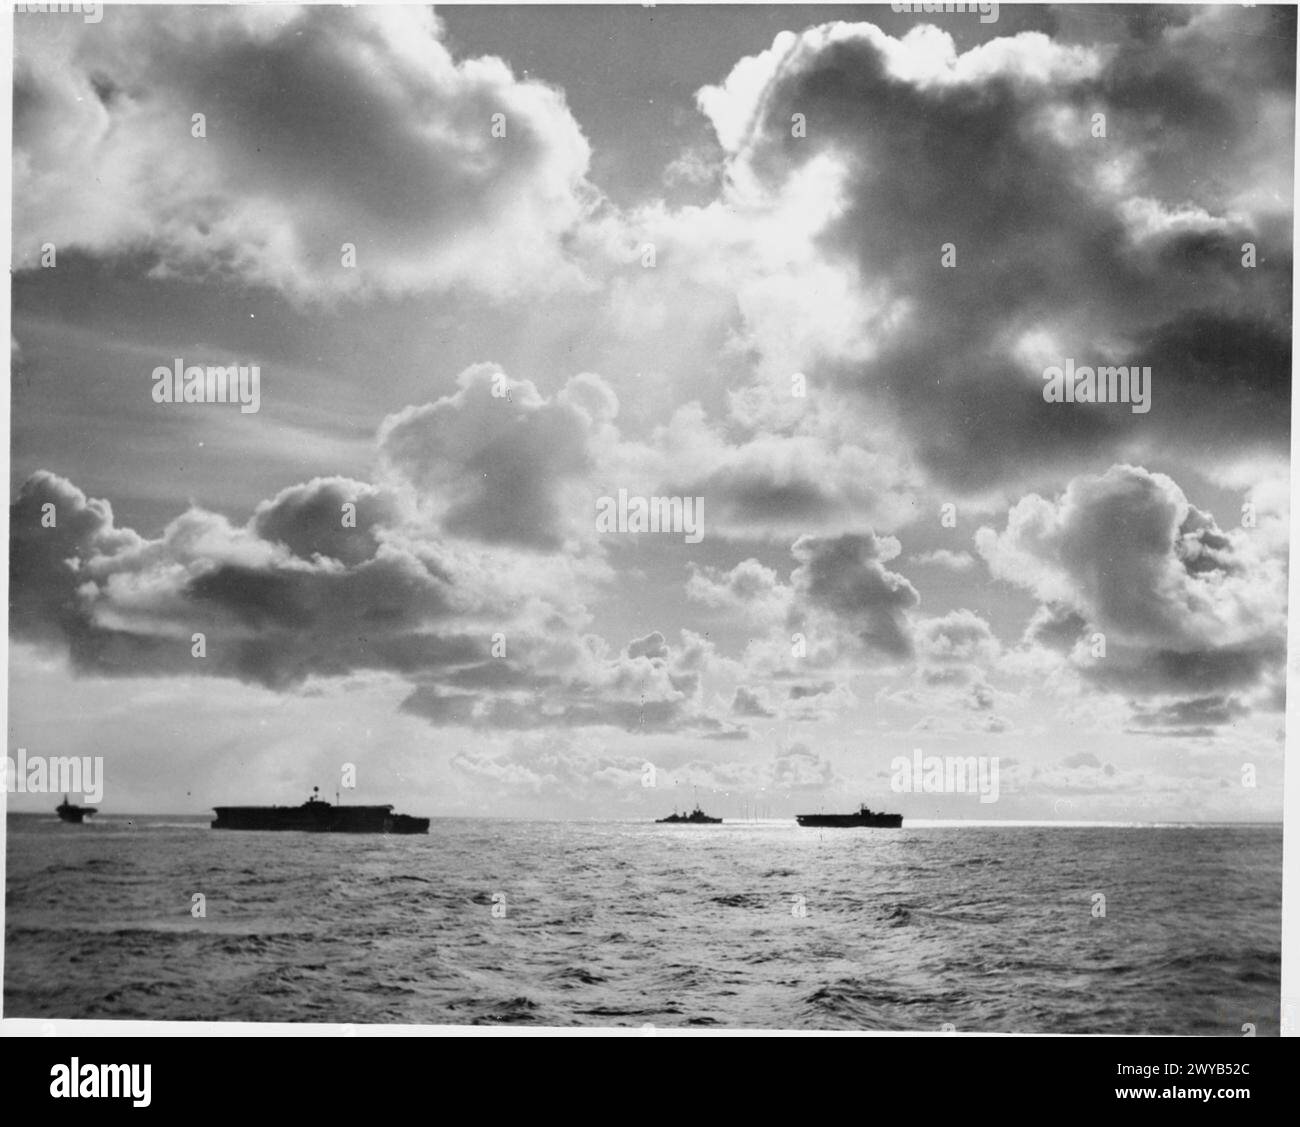 LA MARINA REAL DURANTE LA SEGUNDA GUERRA MUNDIAL - HMS FURIOSO y HMS EMPEROR en el mar con otros barcos en la distancia, en la noche antes de la incursión del brazo aéreo de la flota en el acorazado alemán TIRPITZ. , Royal Navy, EMPEROR (HMS), Royal Navy, HMS Furious, portaaviones/crucero de batalla, (1916) Foto de stock